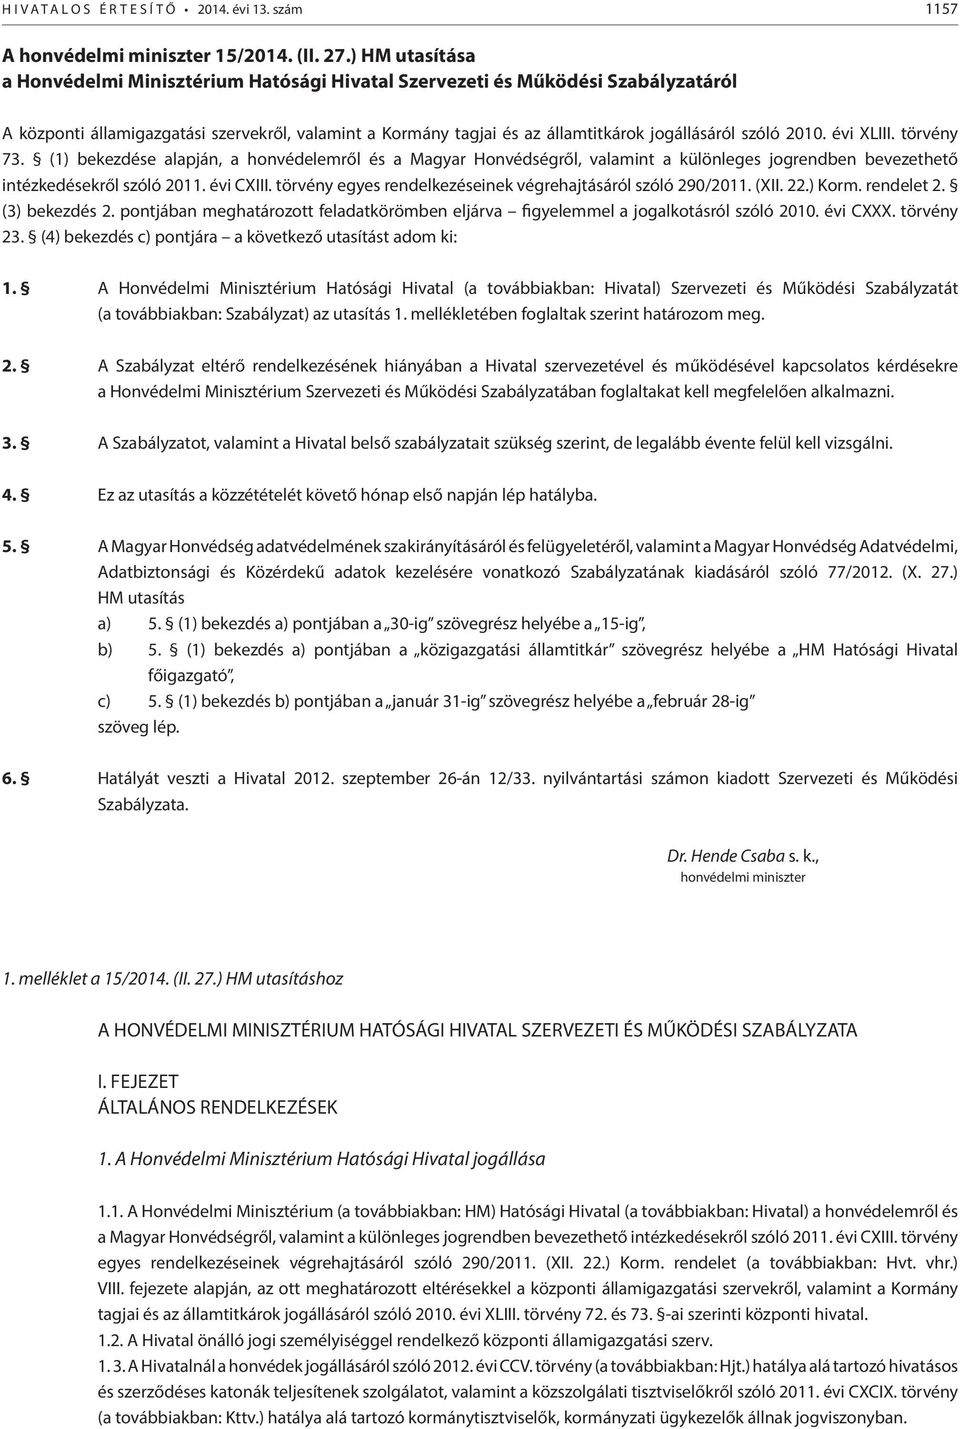 2010. évi XLIII. törvény 73. (1) bekezdése alapján, a honvédelemről és a Magyar Honvédségről, valamint a különleges jogrendben bevezethető intézkedésekről szóló 2011. évi CXIII.